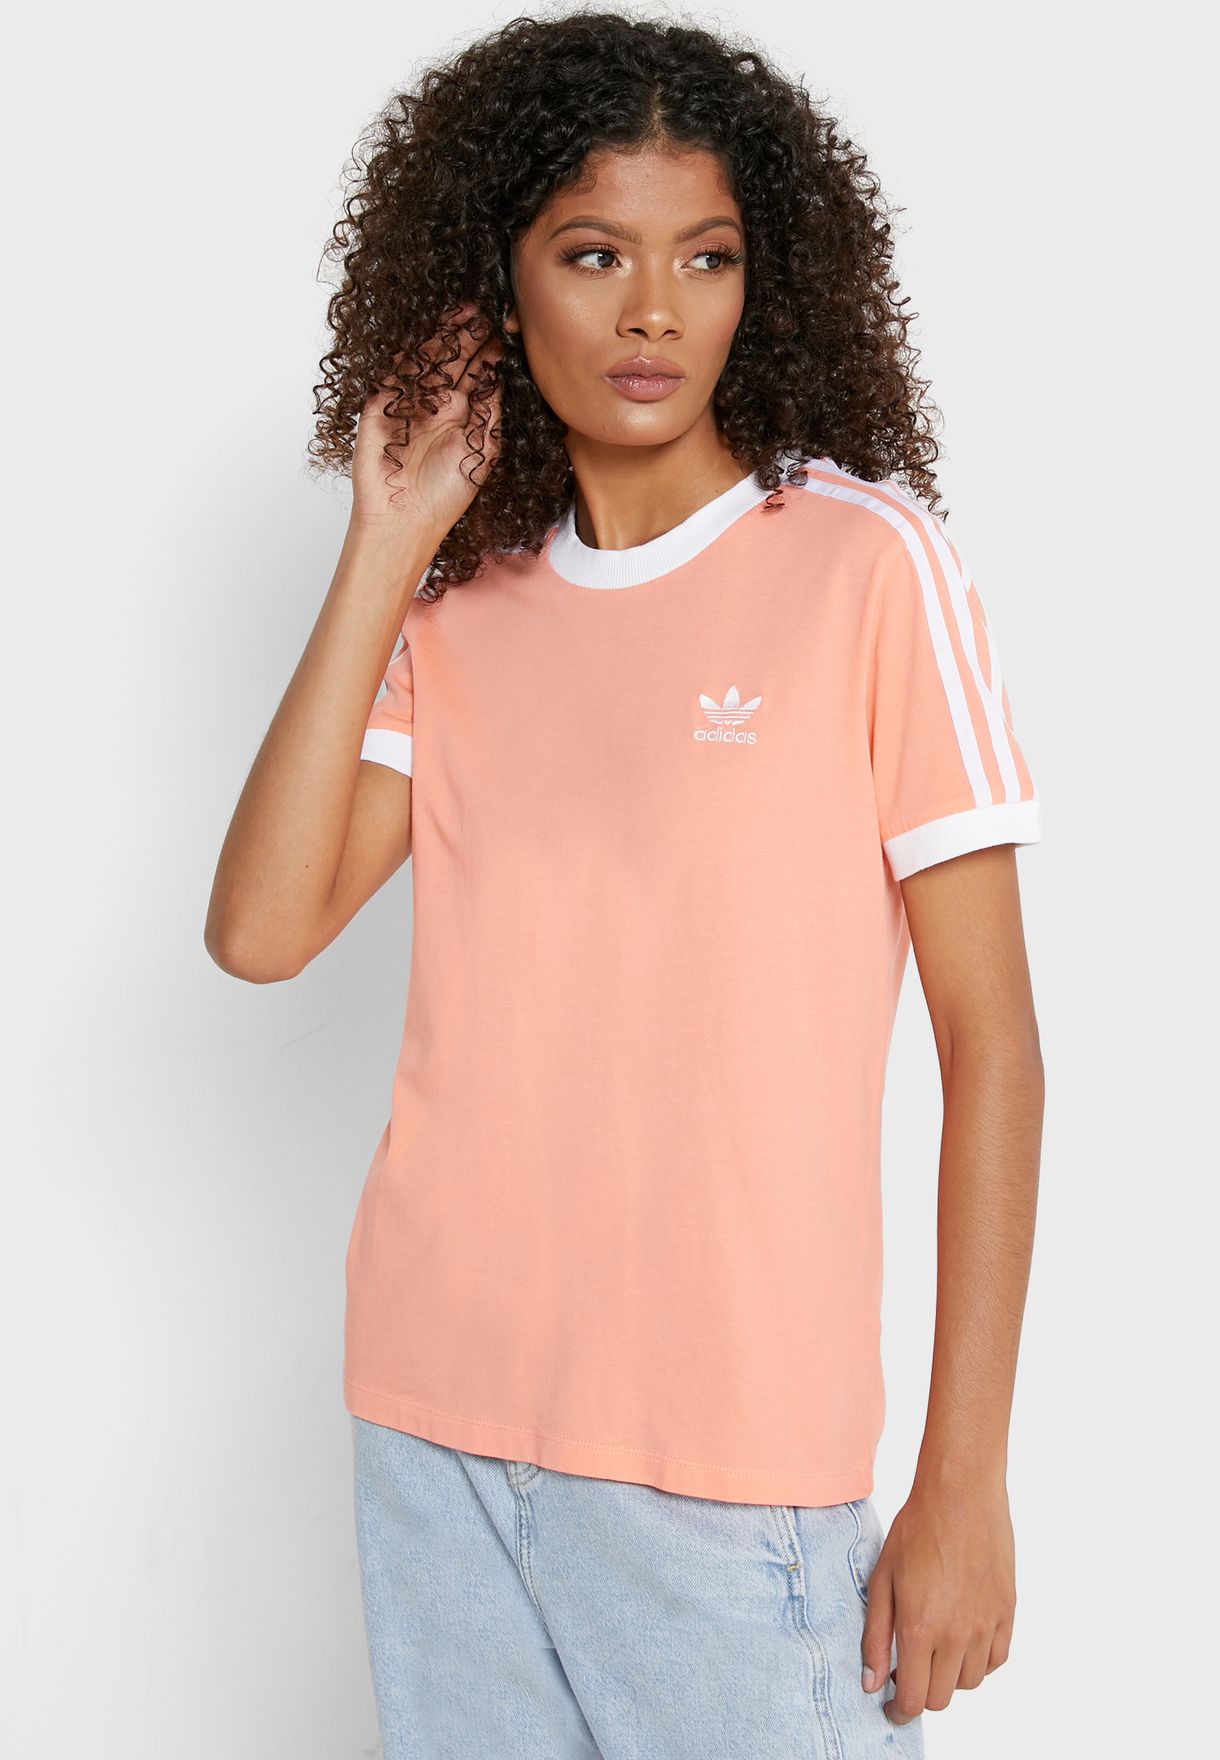 adidas 3 stripe t shirt pink